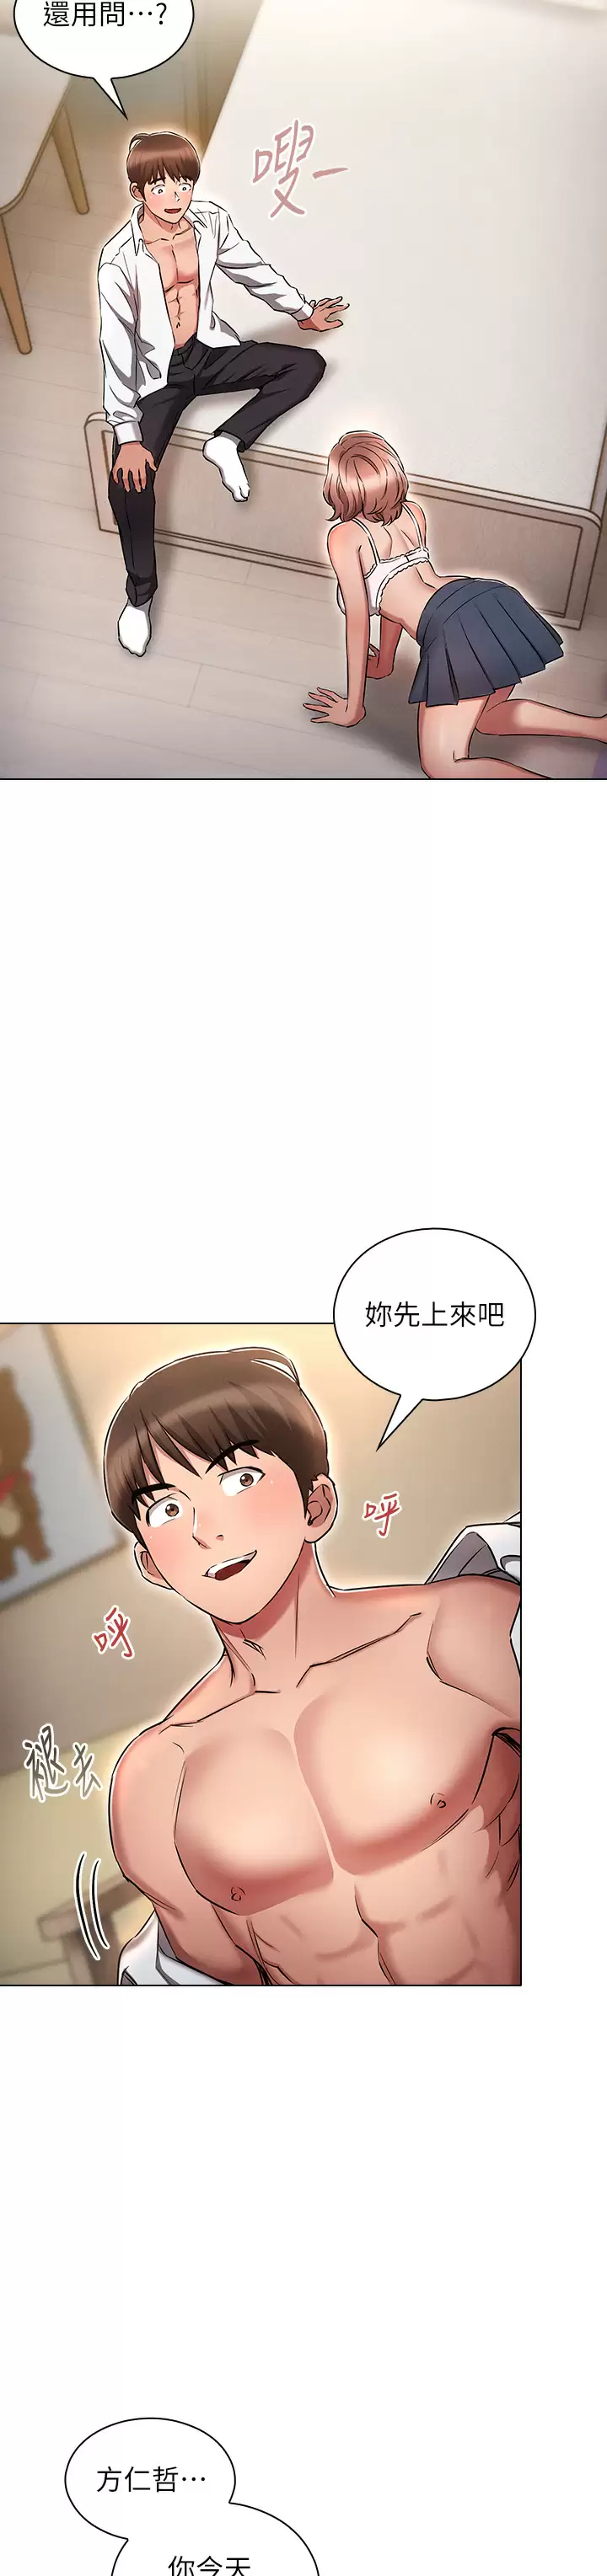 韩国污漫画 魯蛇的多重宇宙 第14话 挑战窗边暴露性爱! 3